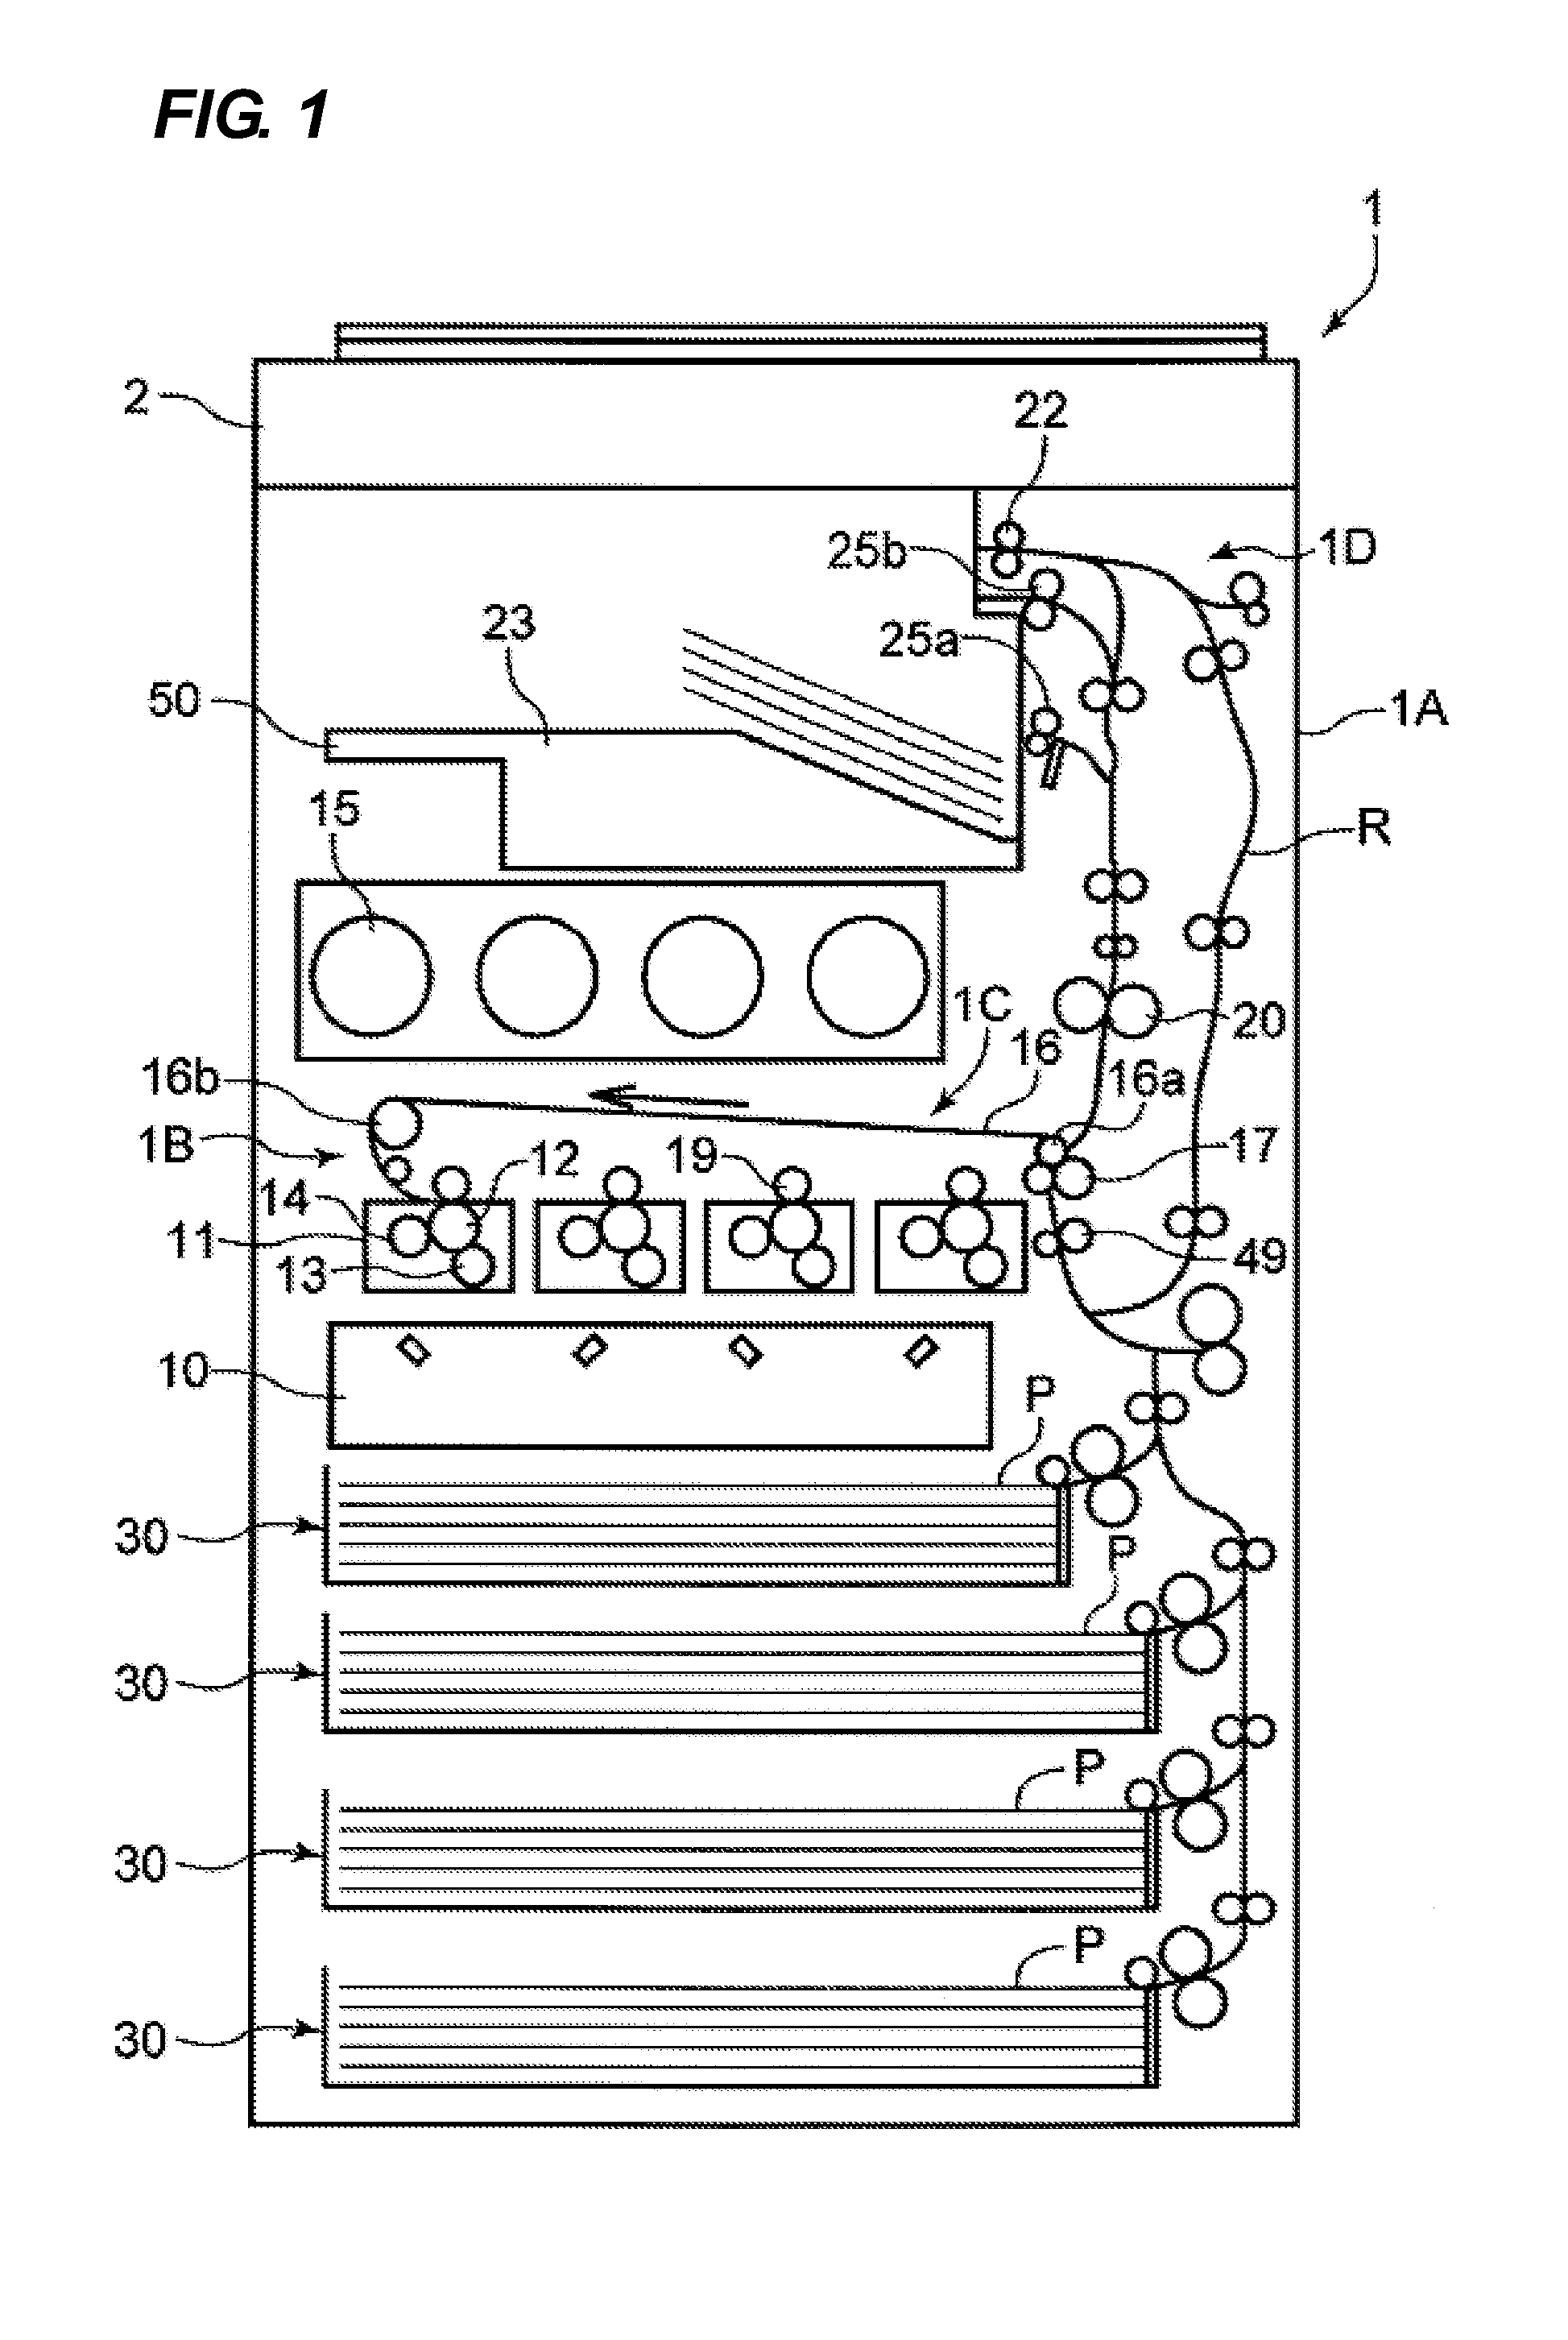 Sheet feeding apparatus and image forming apparatus